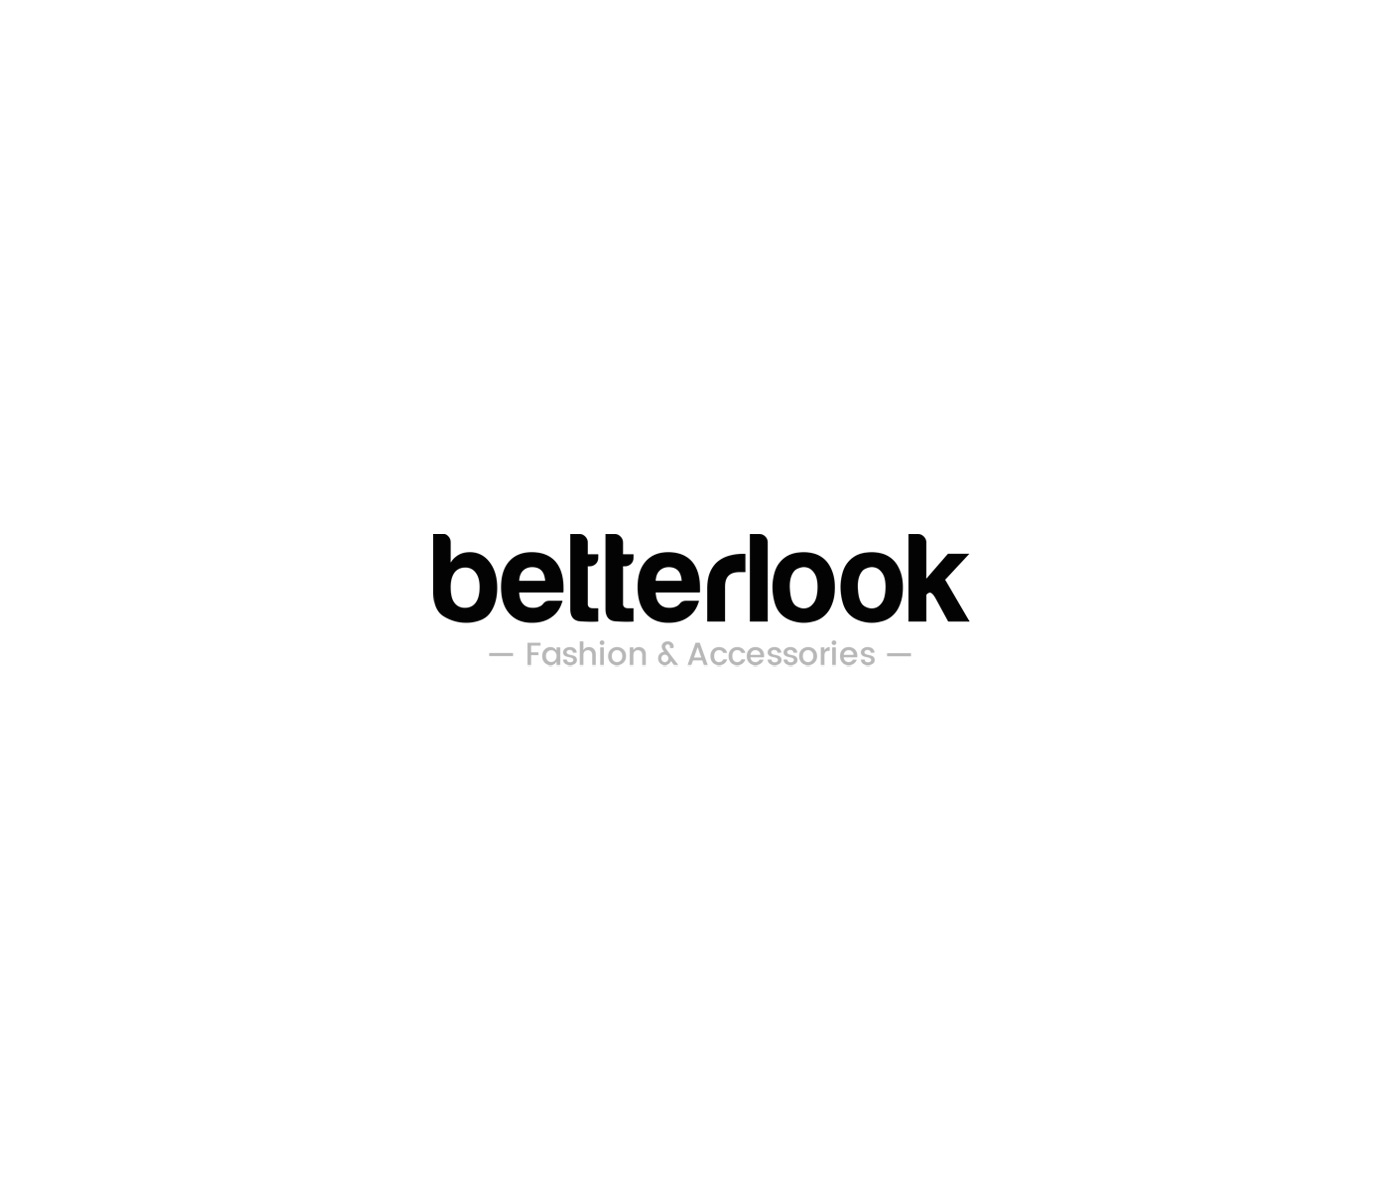 Logo i nazwa marki modowej Betterlook